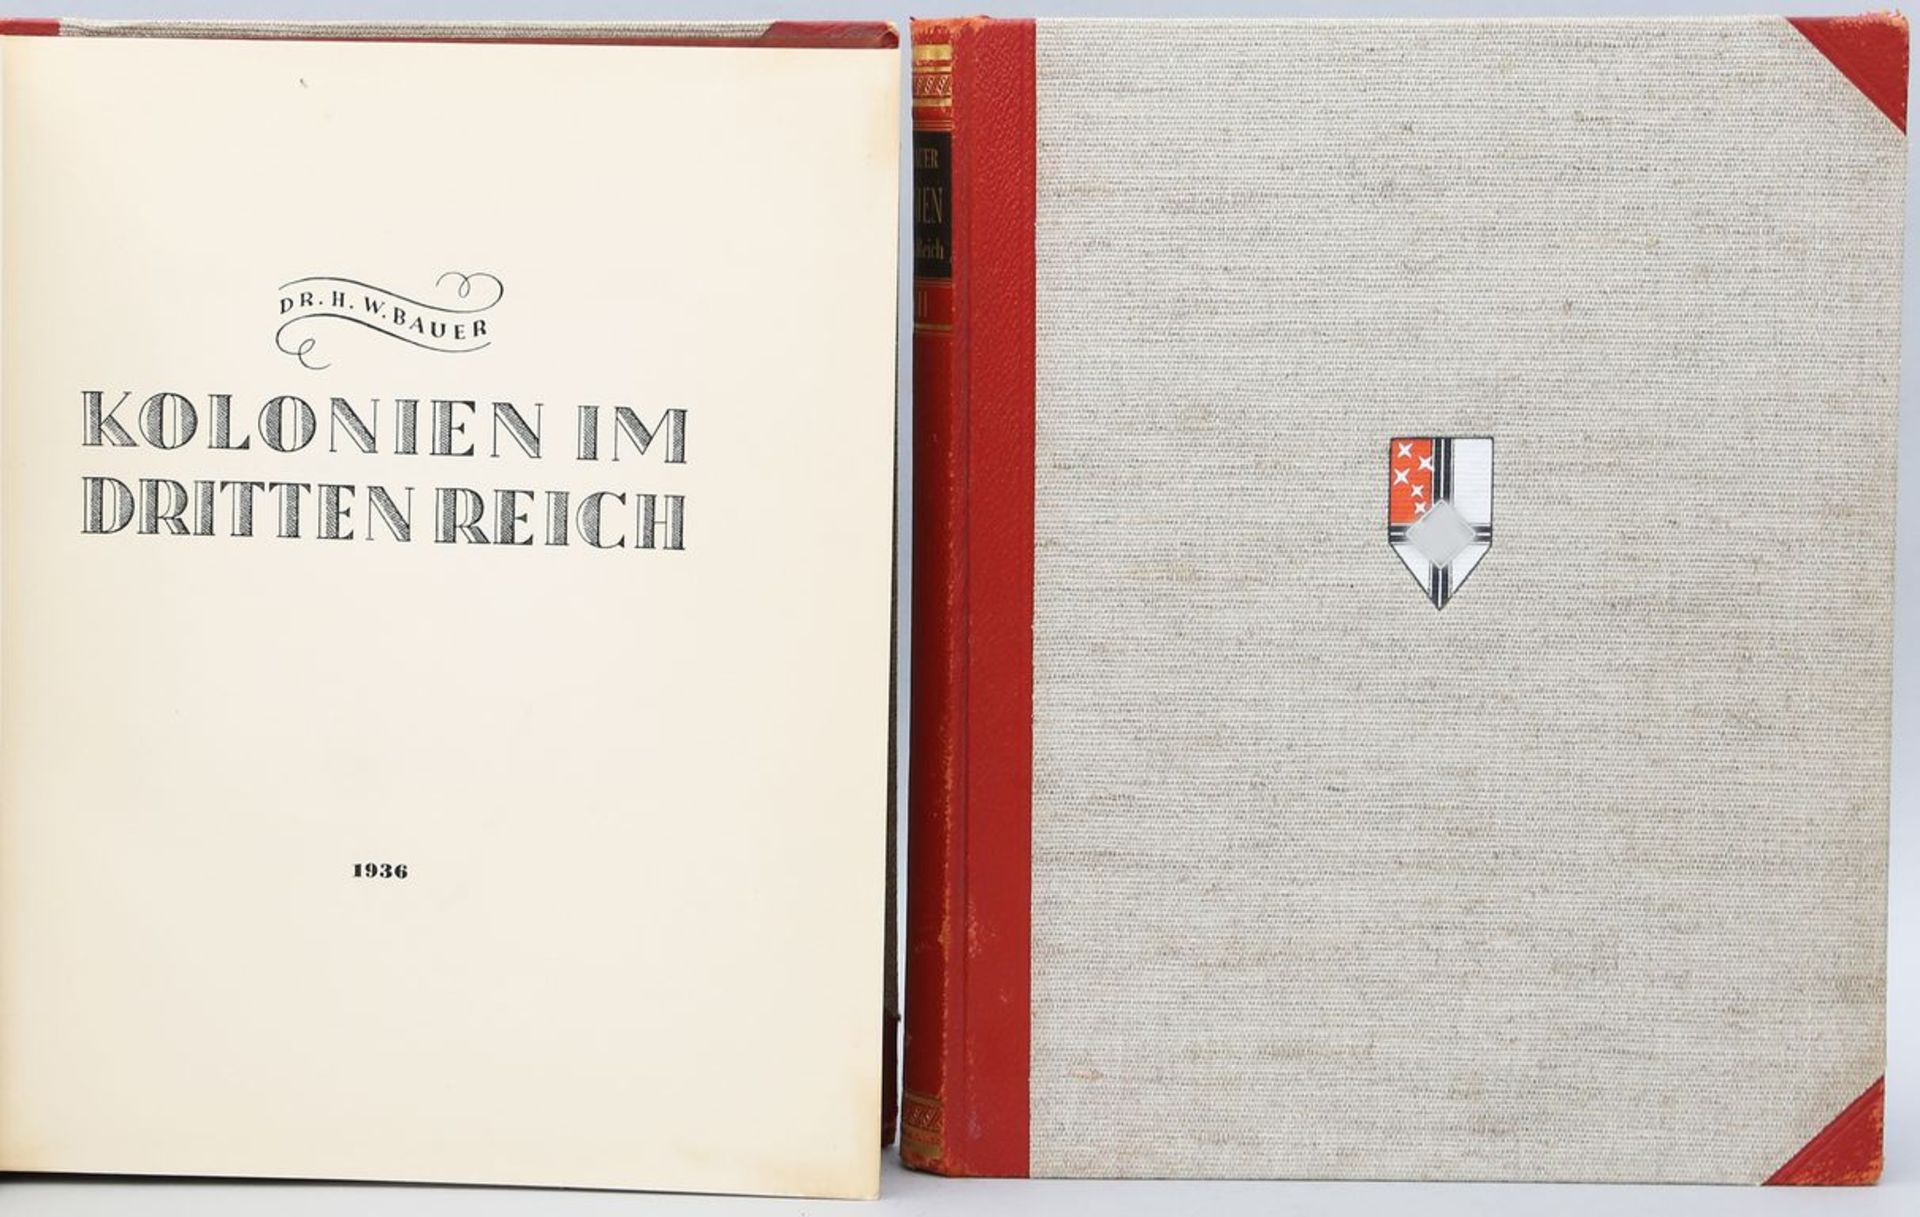 Dr. H.W. Bauer "Kolonien im Dritten Reich", in 2 Bänden. Gauverlag Westdeutscher Beobachter, 1936.